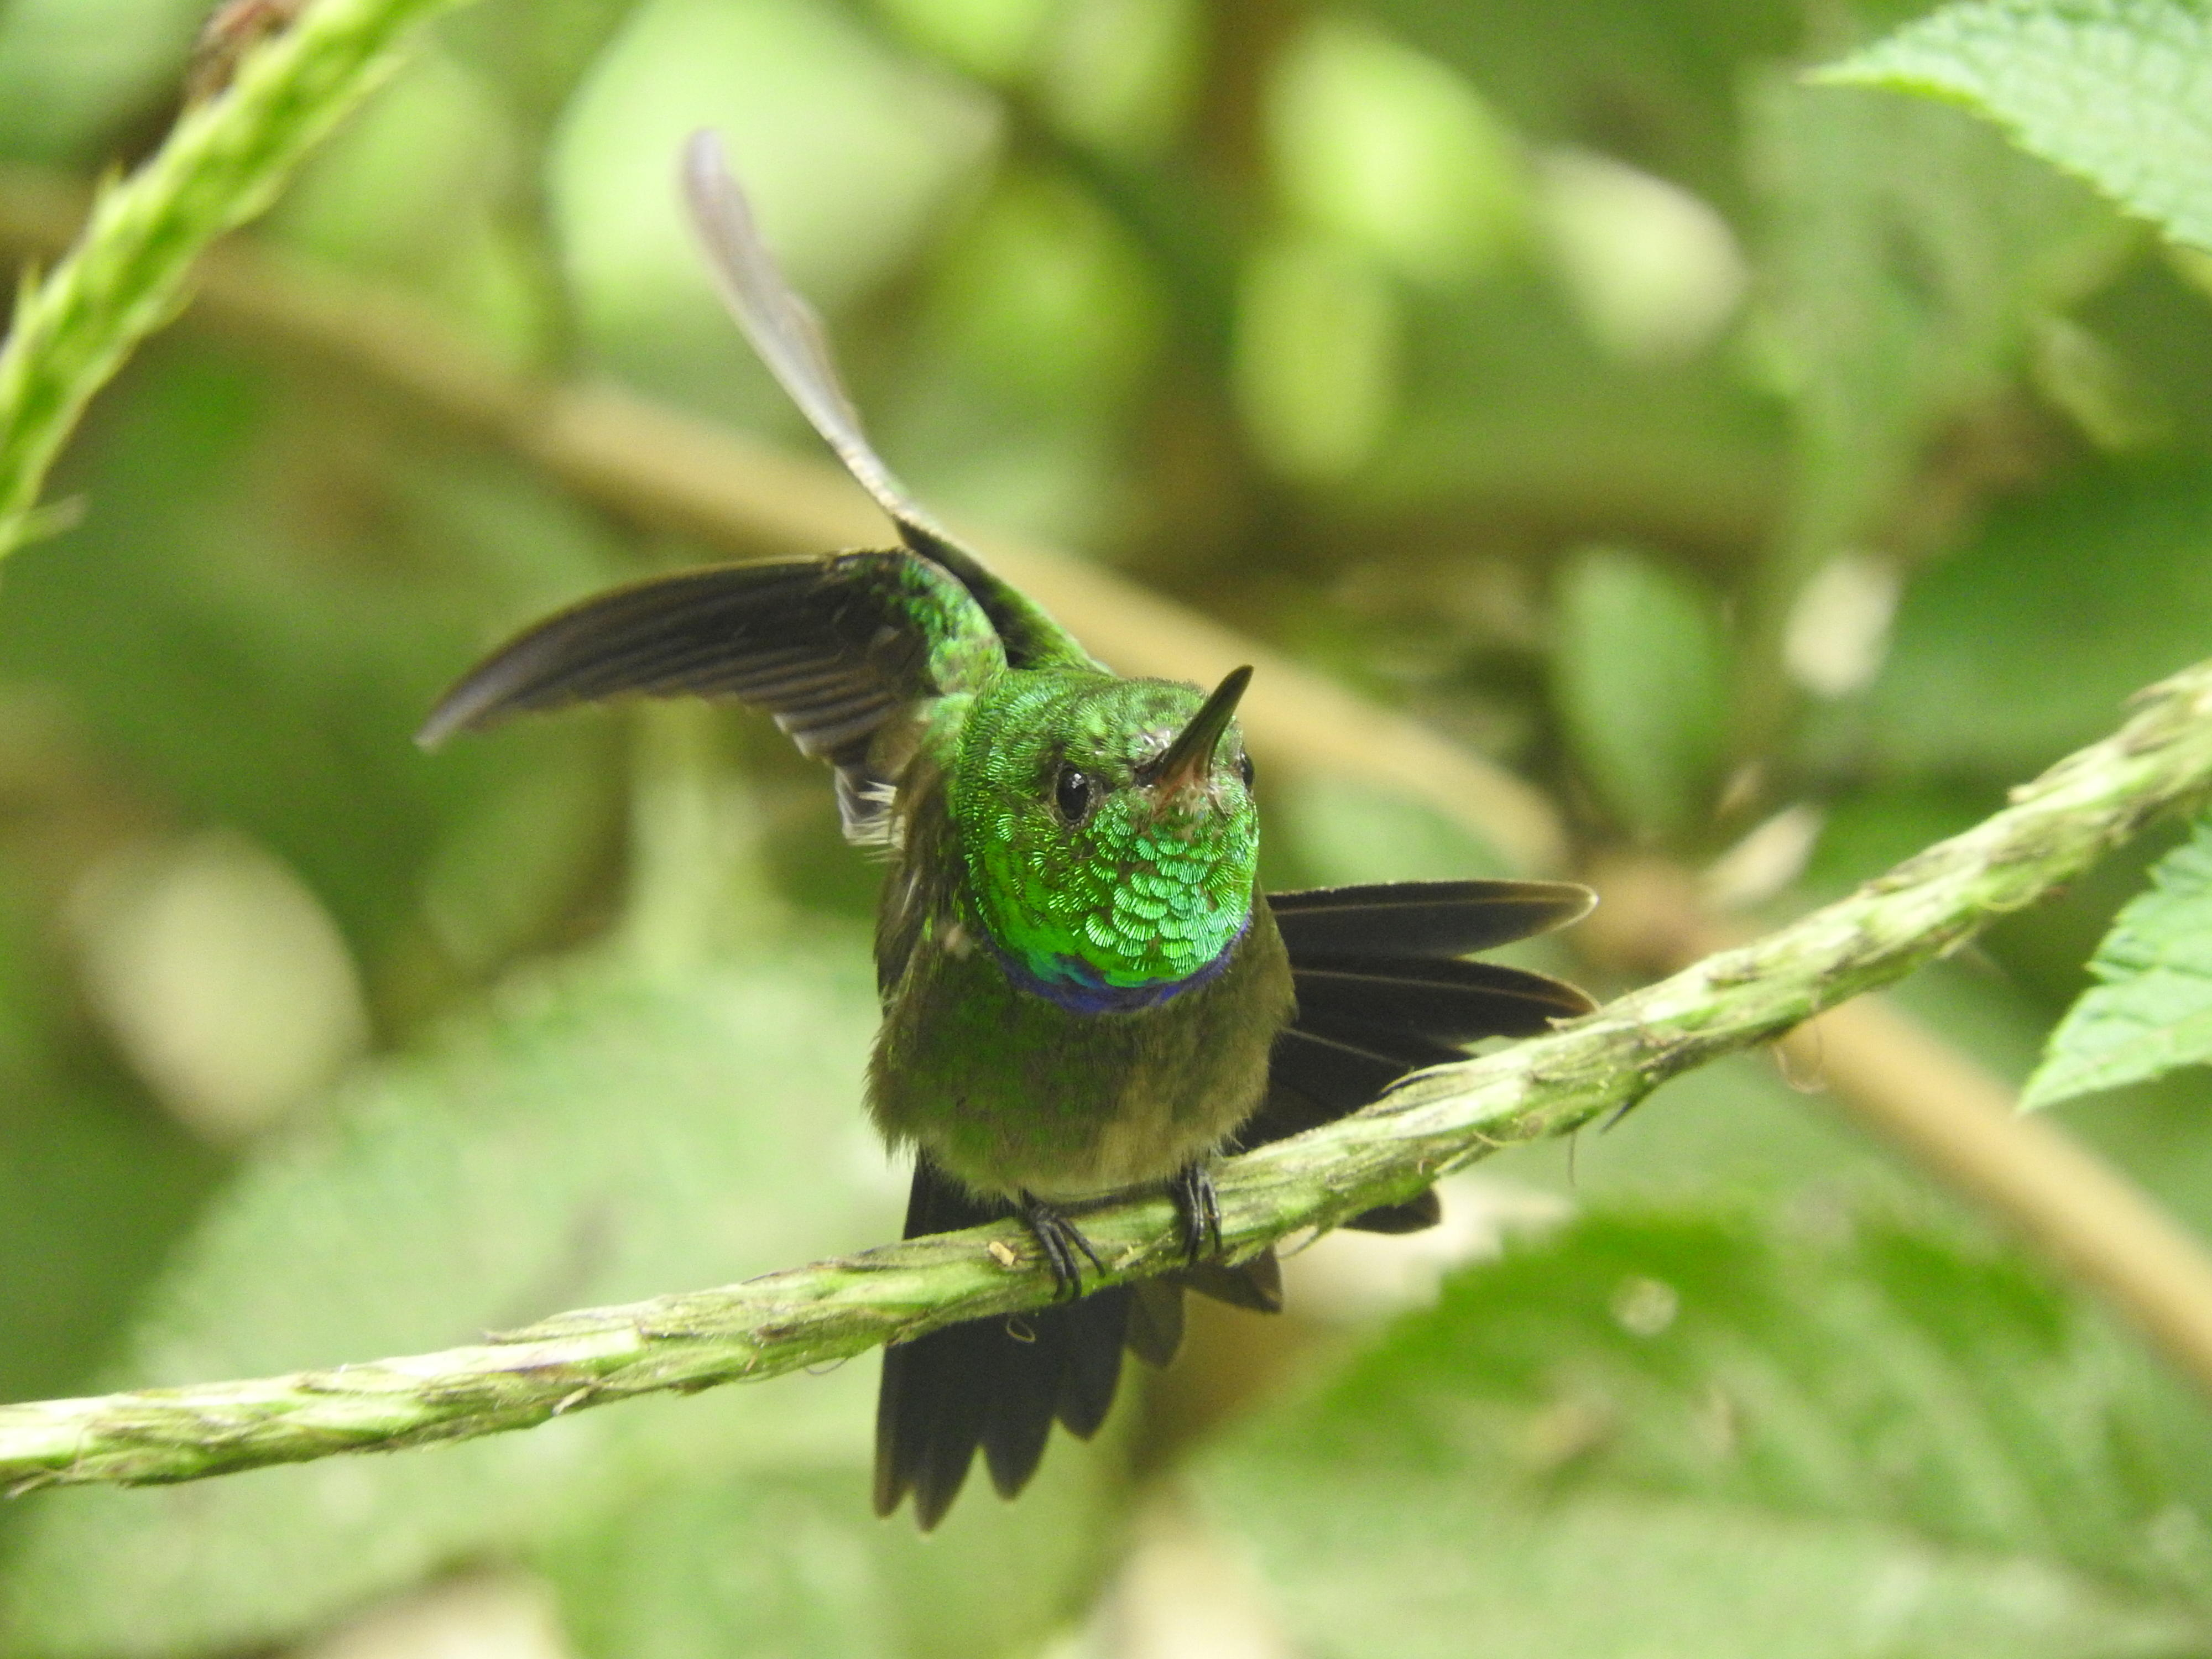 소리풍경(soundscape)을 통해 생태계의 생물다양성을 판단할 수 있는 방법이 개발돼 주목받고 있다. 에콰도르 열대우림에 서식하는 보라가슴벌새의 모습. 네이처 커뮤니케이션스 제공